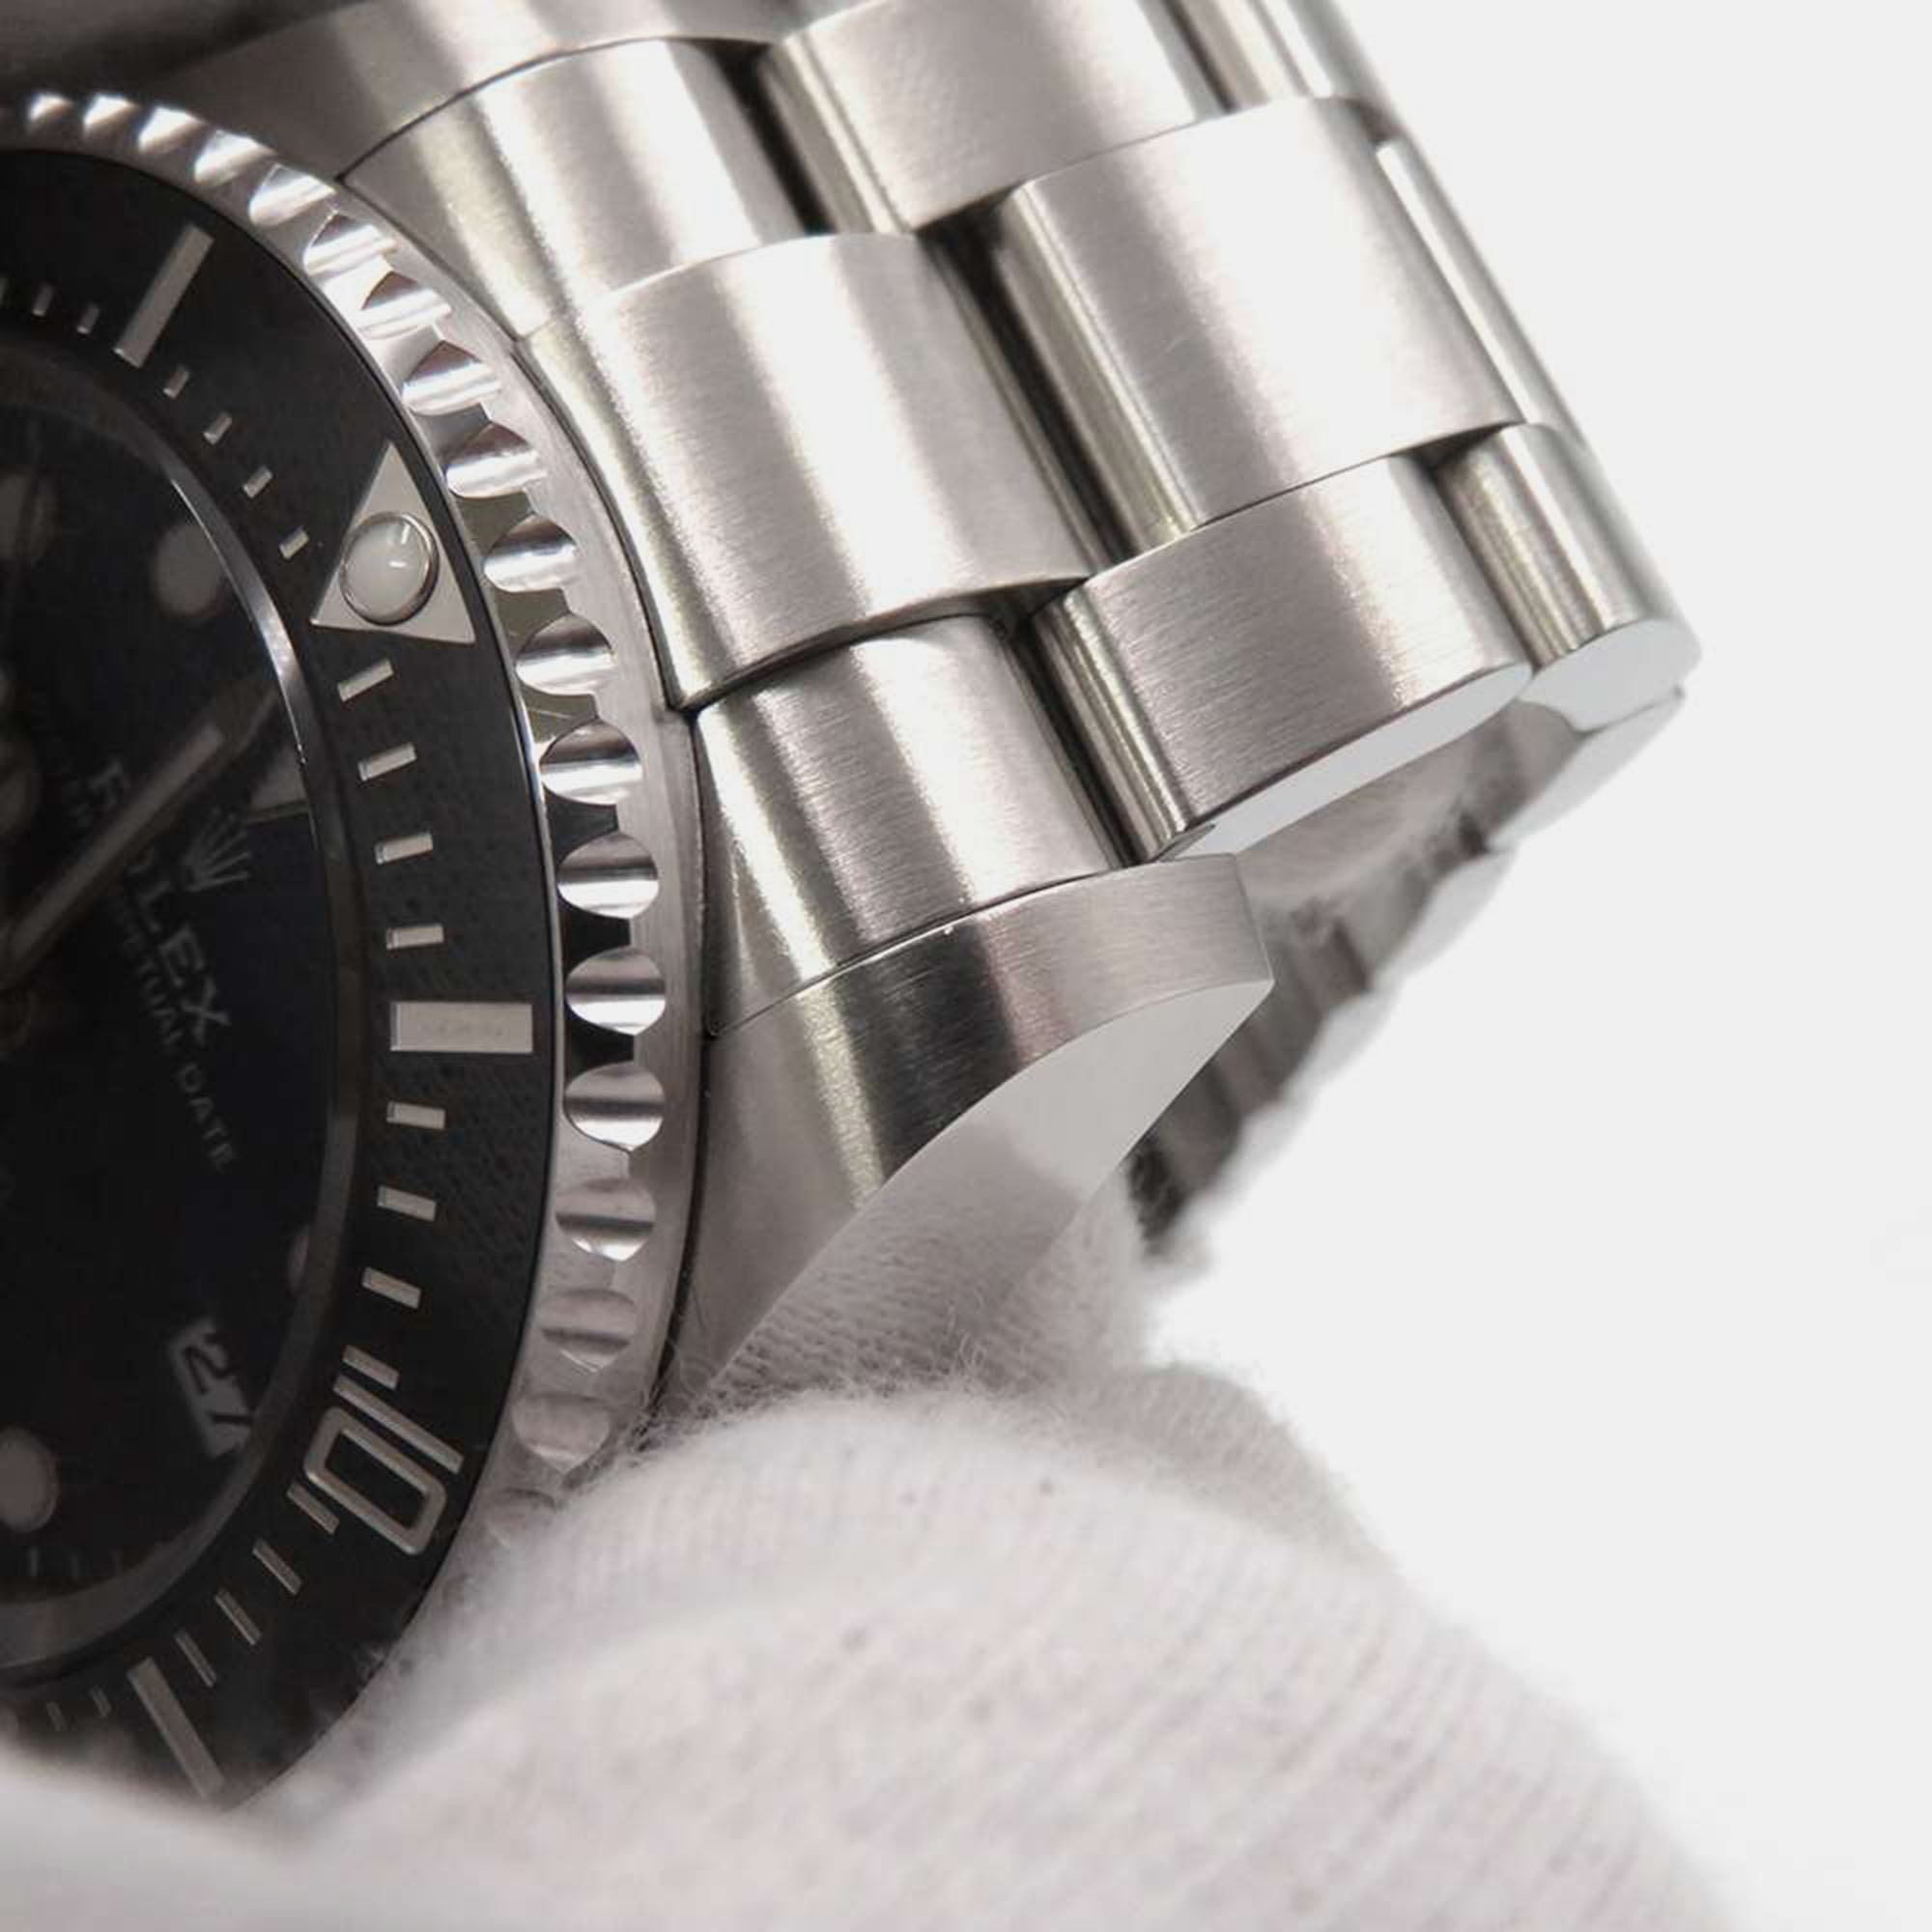 Rolex Blue Stainless Steel Sea-Dweller Deepsea 136660 Automatic Men's Wristwatch 44 Mm